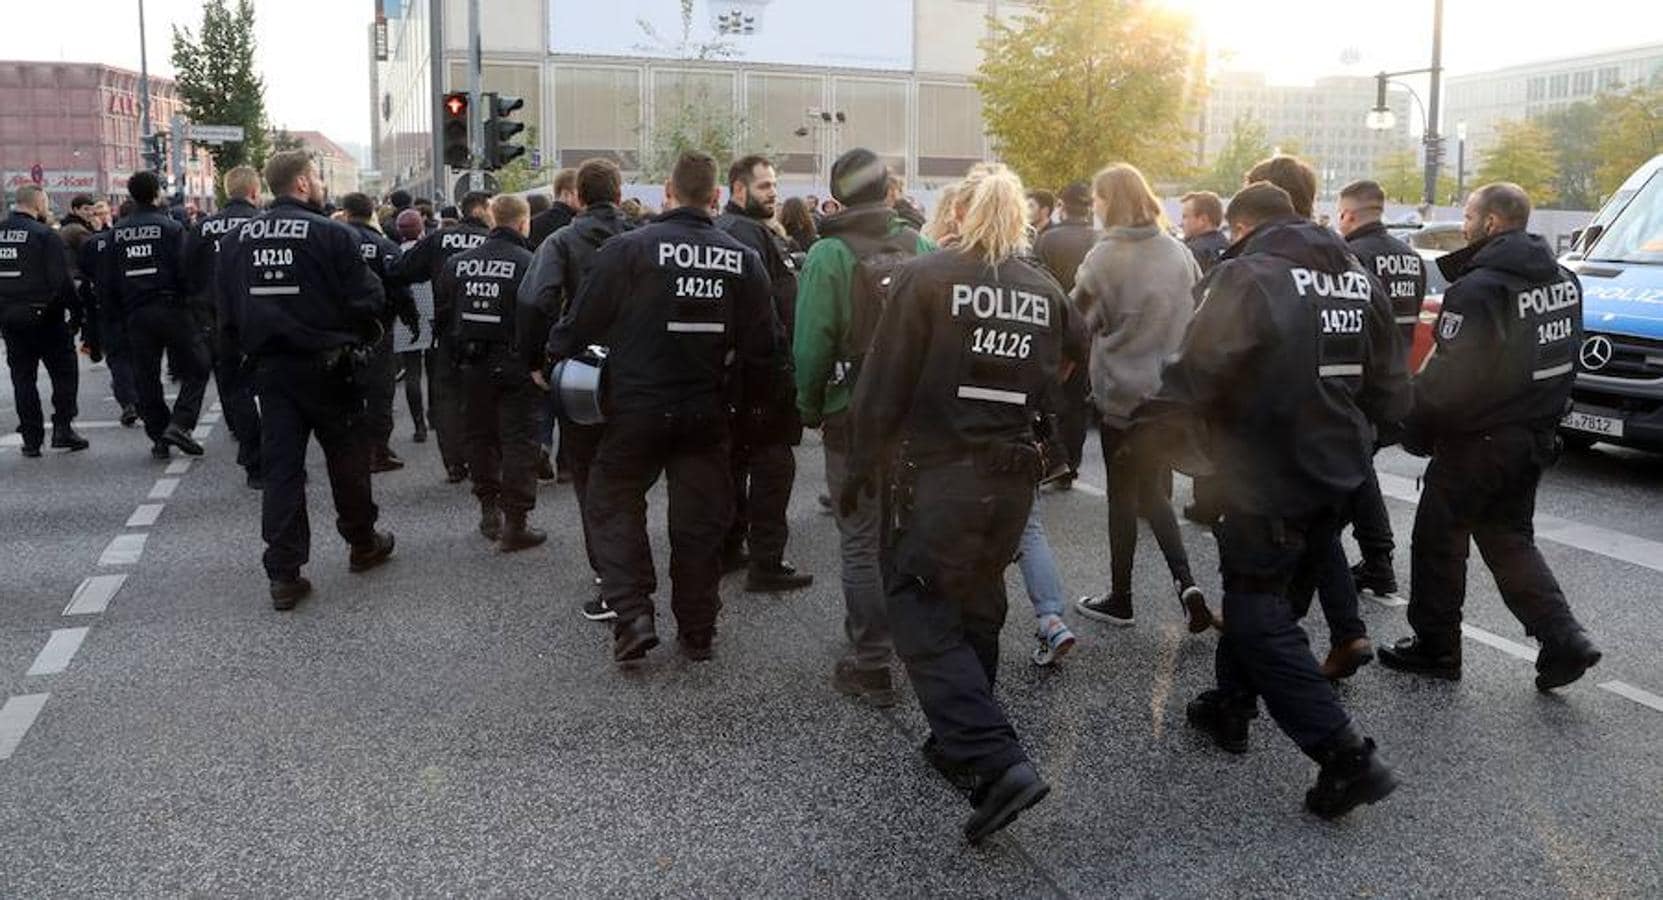 Un grupo de policias protege a personas que protestan contra el partido Alternativa por Alemania (AfD), de EFE/EPA